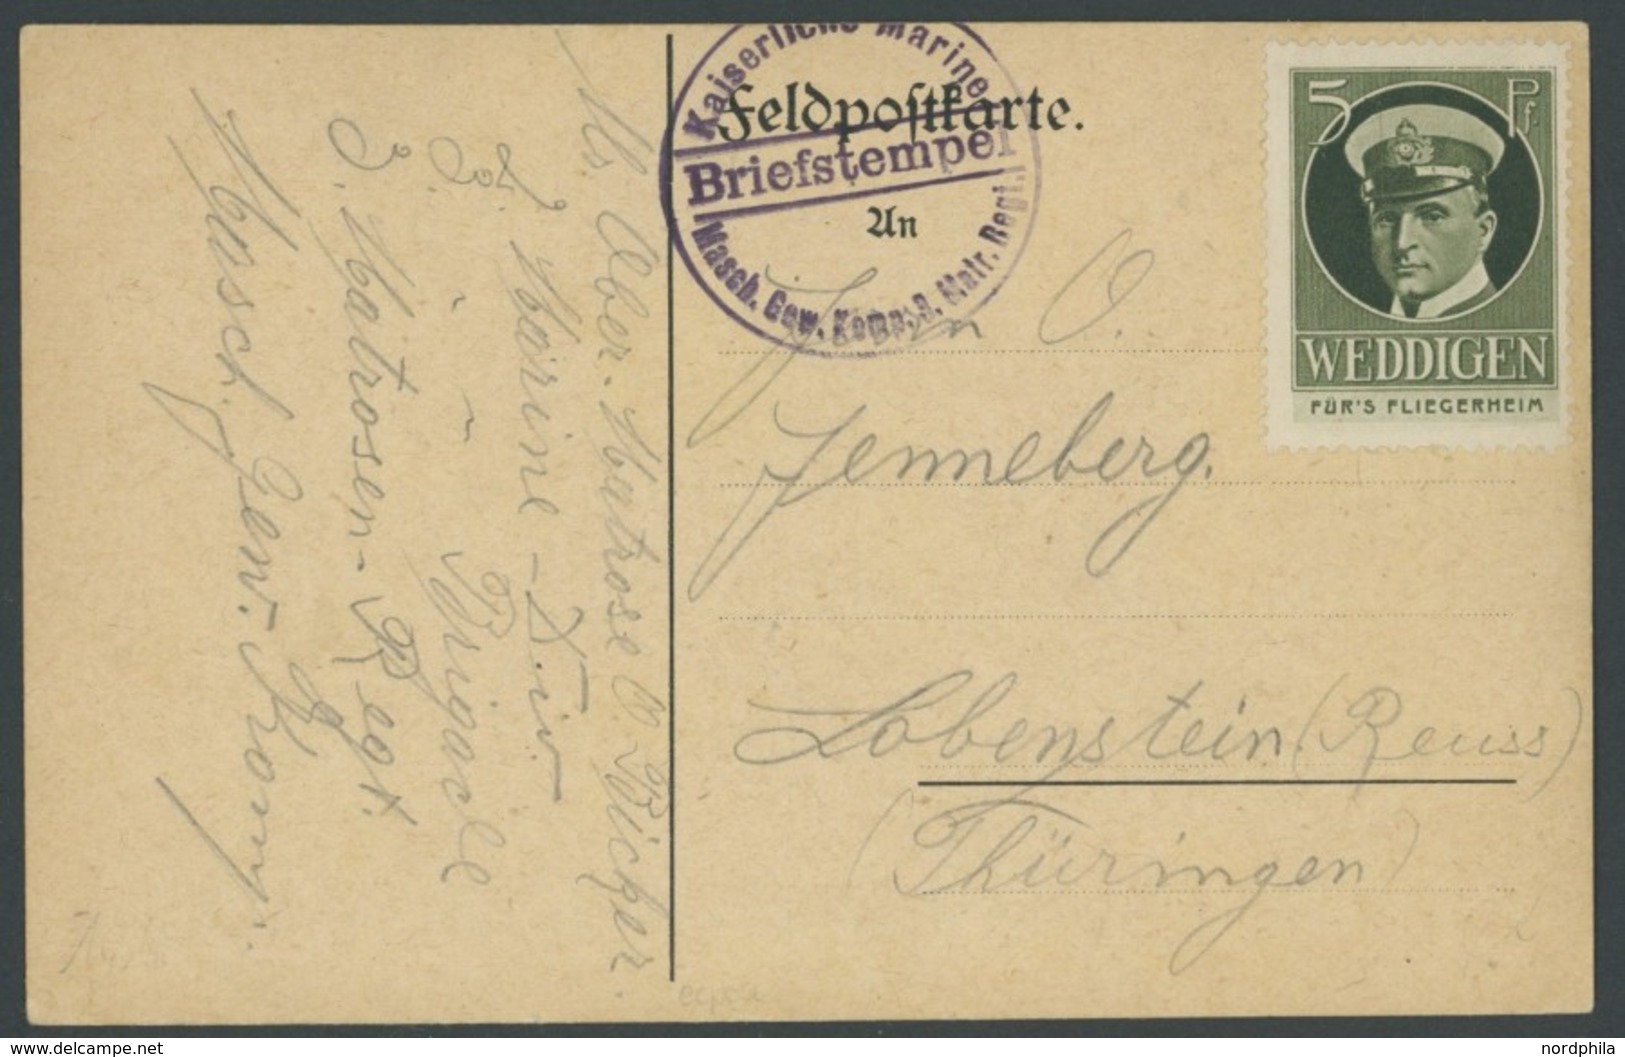 LUFTPOST-VIGNETTEN 1916, Flieger-Spenden-Vignette WEDDIGEN (U-Boots Kommandant) Auf Feldpostkarte Mit Marine-Briefstempe - Airmail & Zeppelin